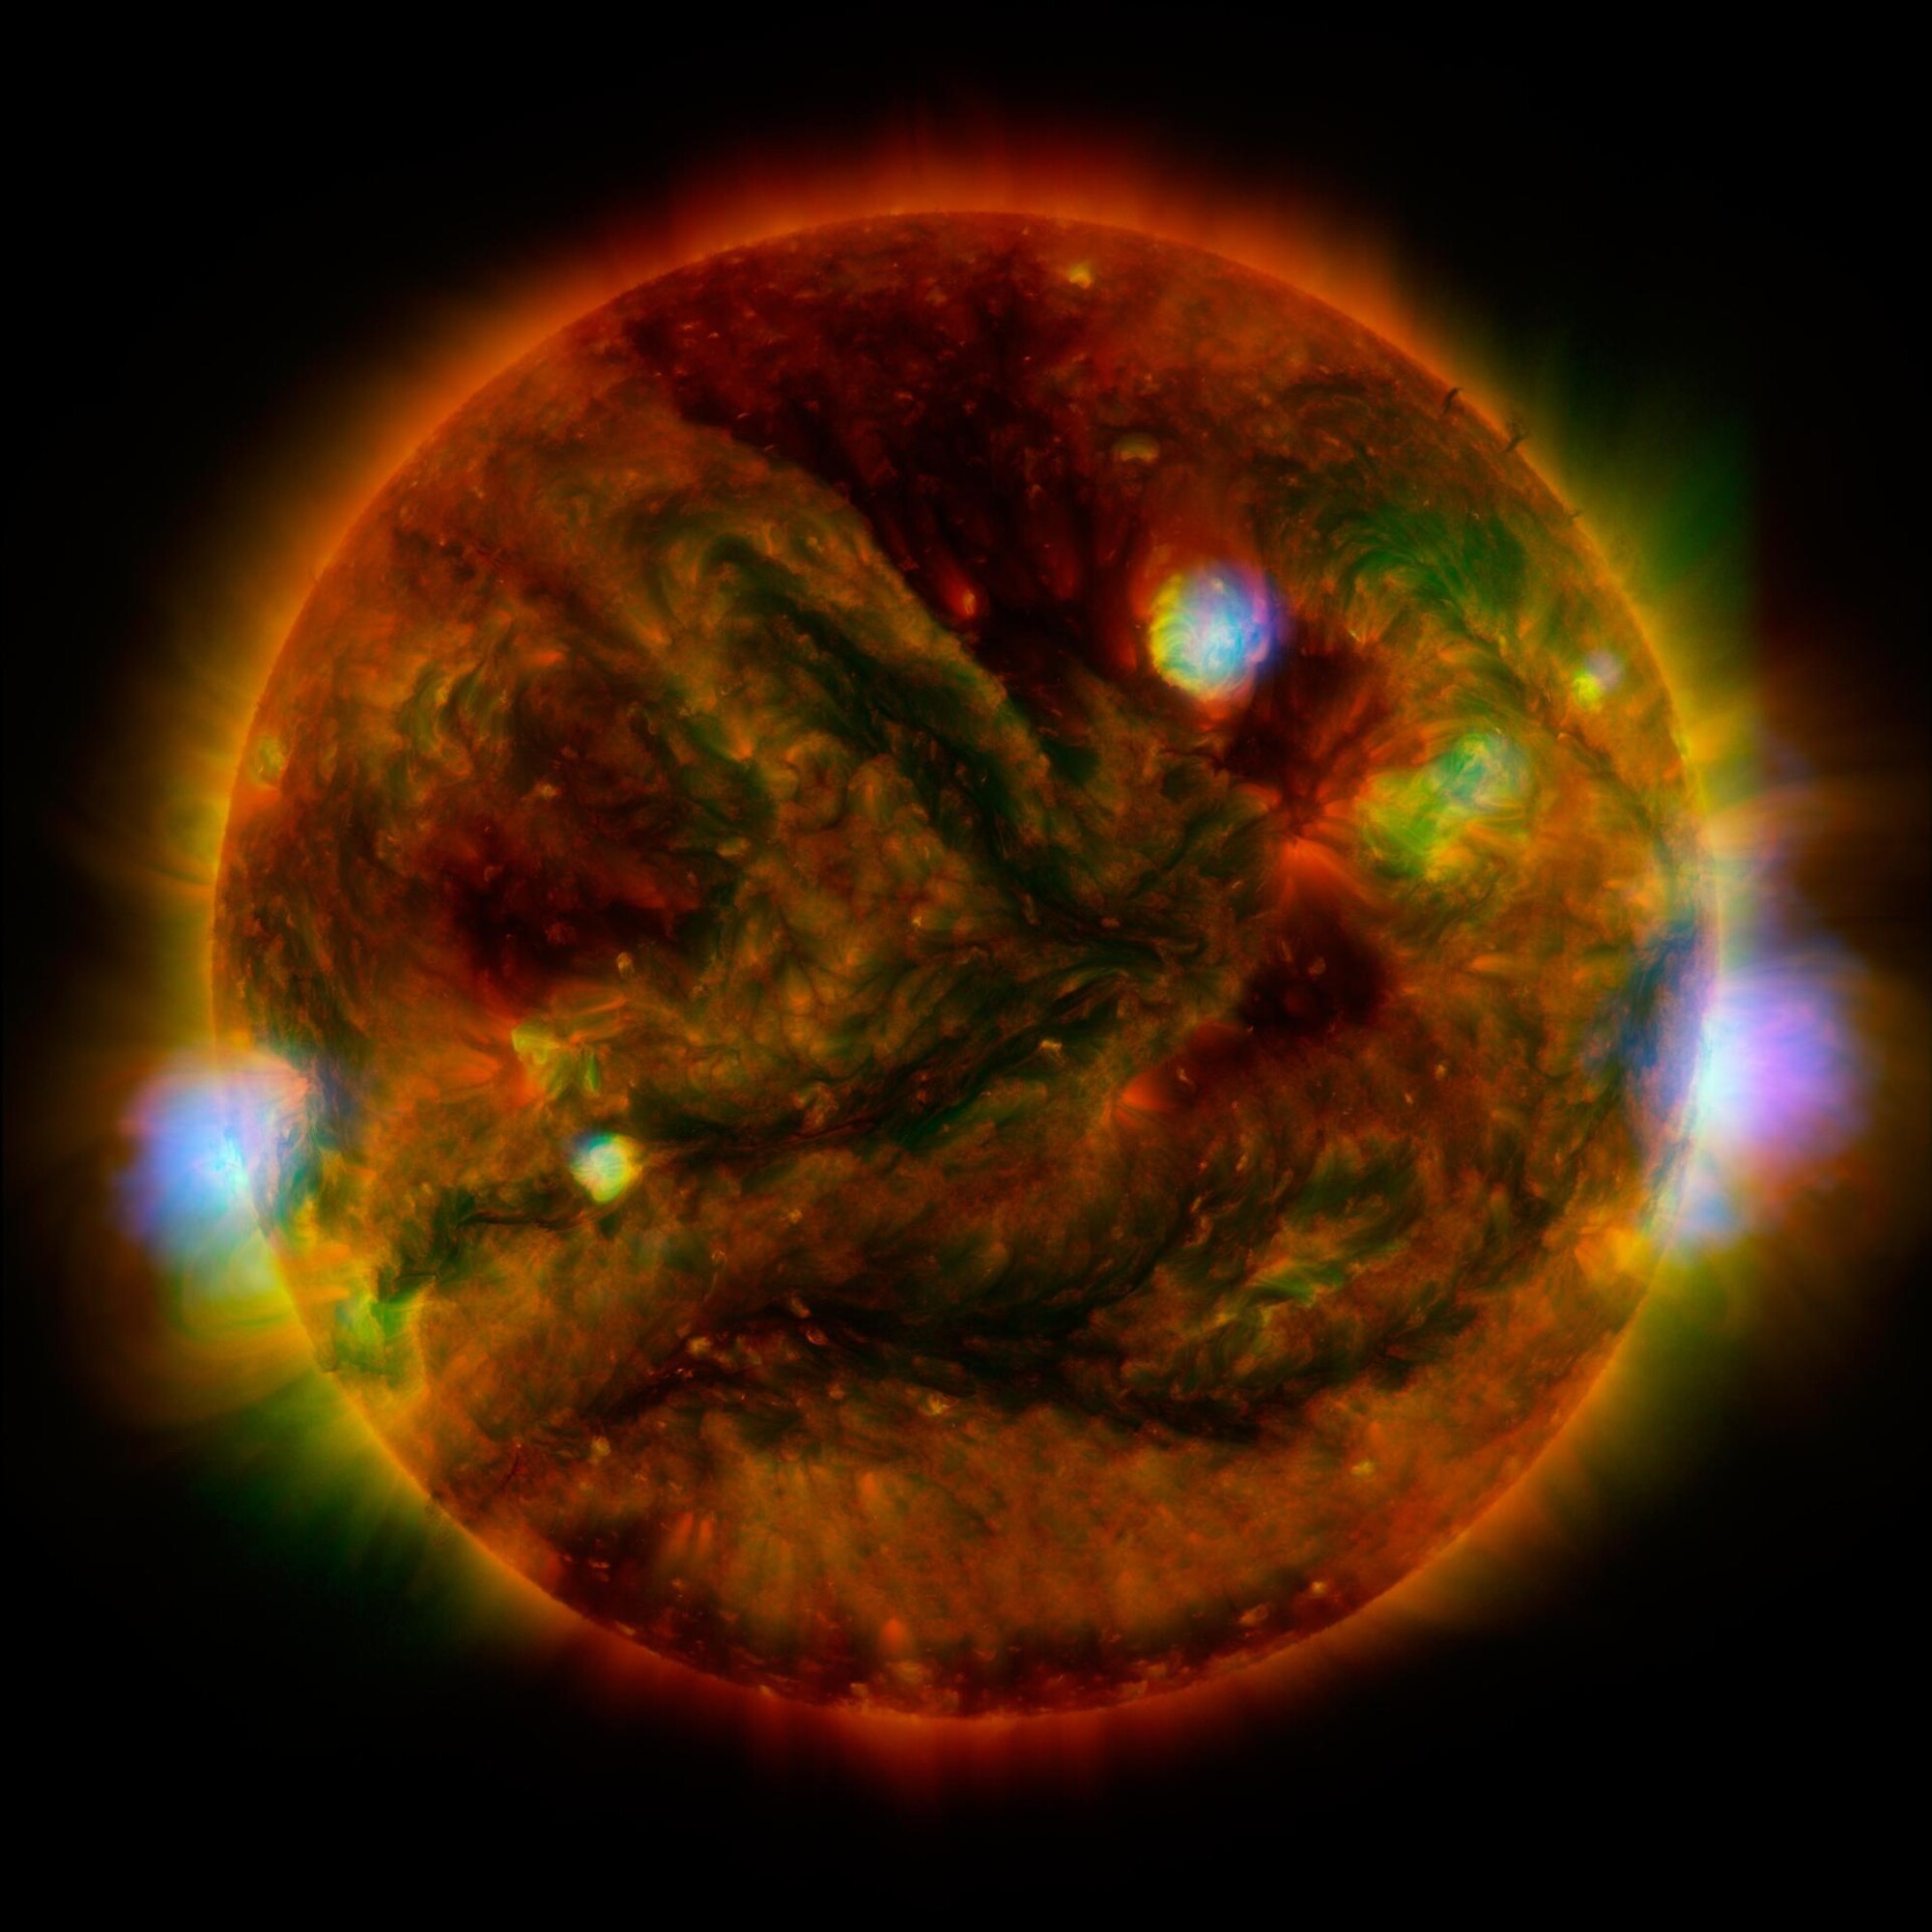 Jak vypadá Slunce zabalené do rentgenových paprsků? Kosmická sonda NuSTAR nese teleskop, který rentgenové záření zaznamenává. Na tomto snímku kombinujícím pozorování z několika dalekohledů jsou zvýrazněny planoucí aktivní oblasti Slunce. 

Vysokoenergetické rentgenové paprsky z NuSTARu od NASA jsou zobrazeny modře, nízkoenergetické rentgenové záření z japonské sondy Hinode zeleně a extrémní ultrafialové světlo z družice NASA Solar Dynamics Observatory je žluté a červené. Všechny tři dalekohledy pořídily své sluneční snímky přibližně ve stejnou dobu 29. dubna 2015.